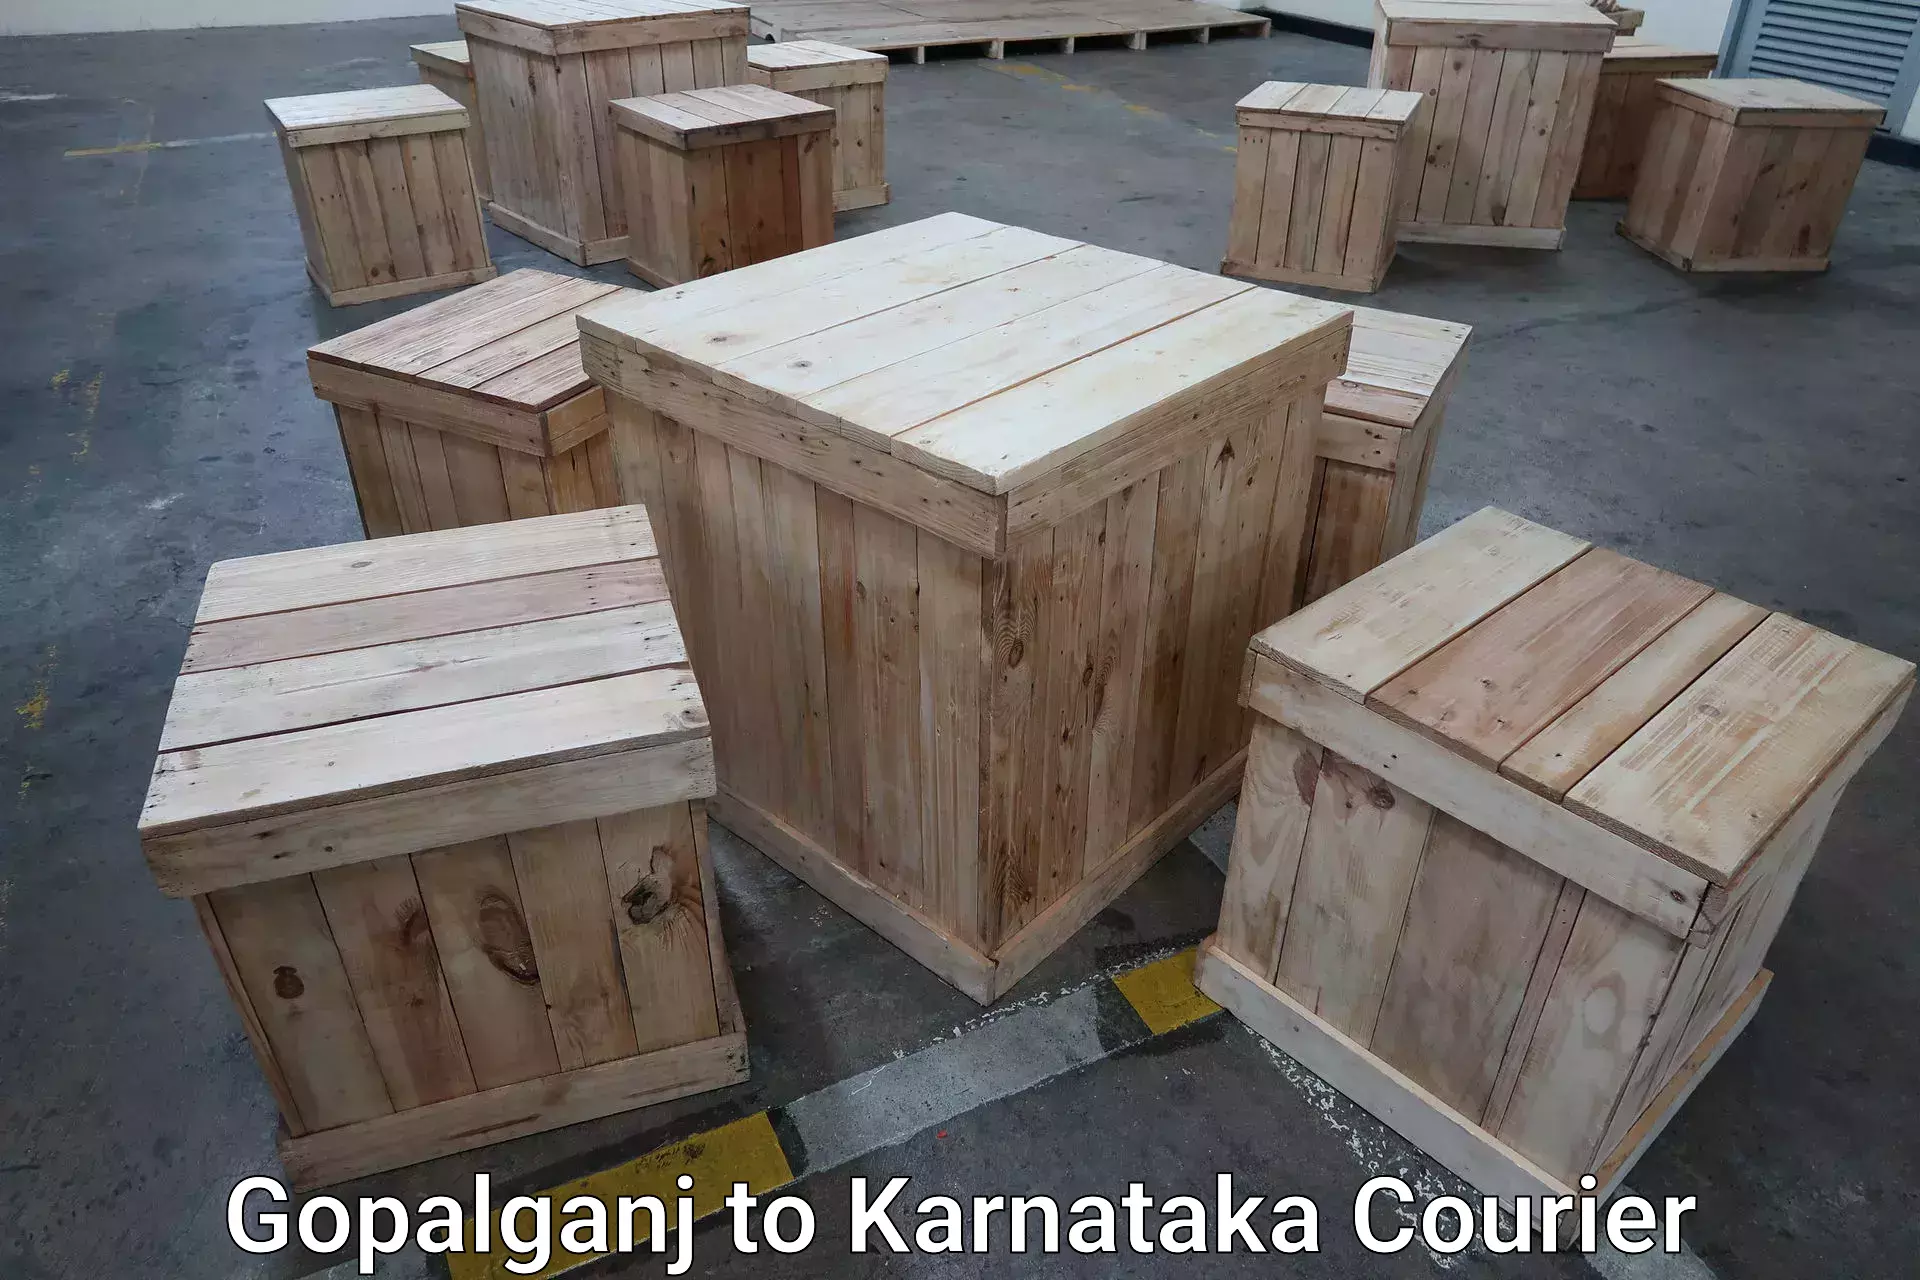 Express luggage delivery Gopalganj to Kanjarakatte